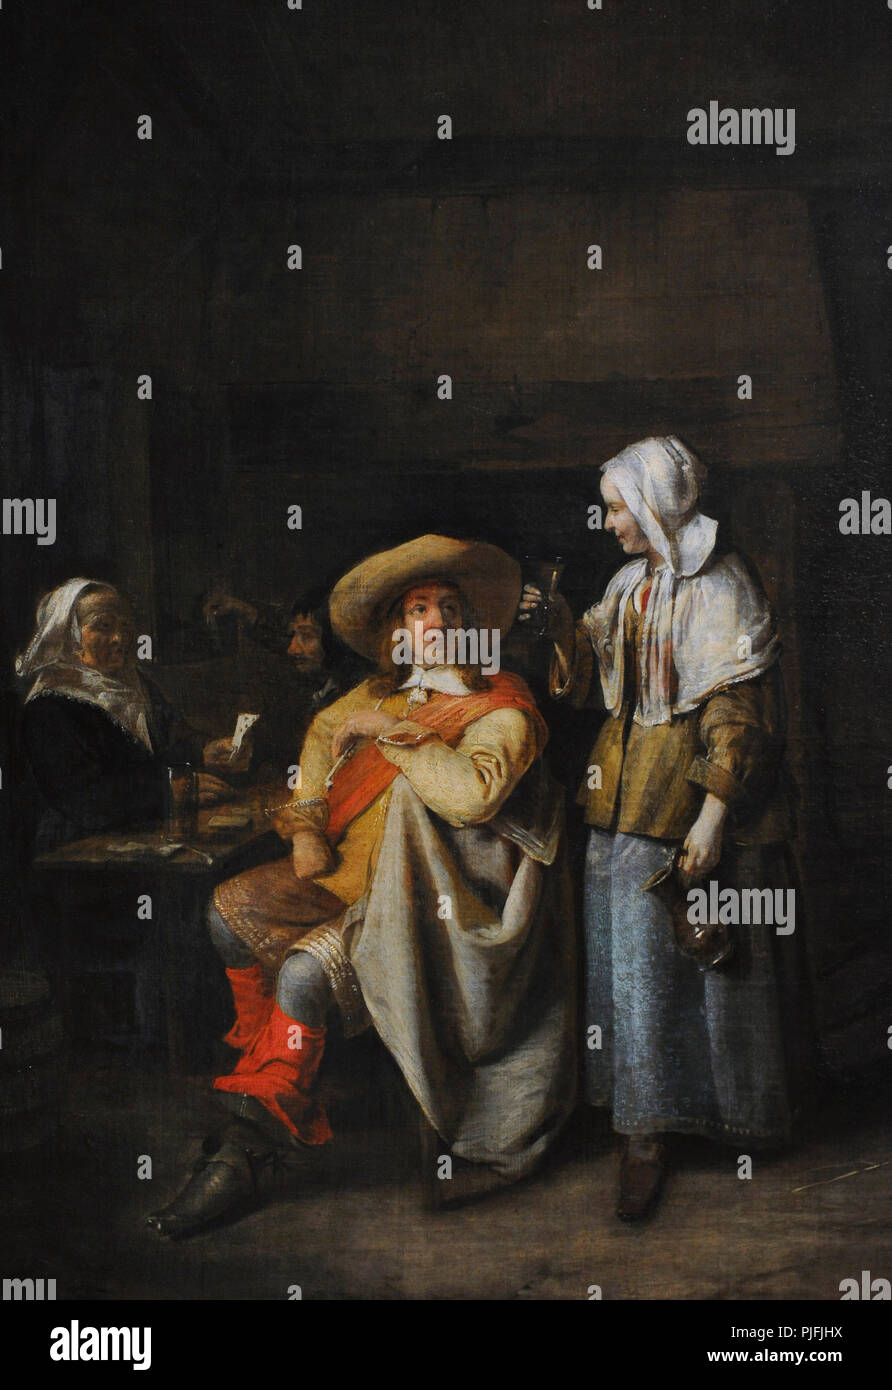 Pieter de Hooch (1629-1684). La edad de oro holandesa pintor. Oficial y dos jugadores de cartas, 1652-1655. Detalle. Museo Wallraf-Richartz. Colonia. Alemania. Foto de stock